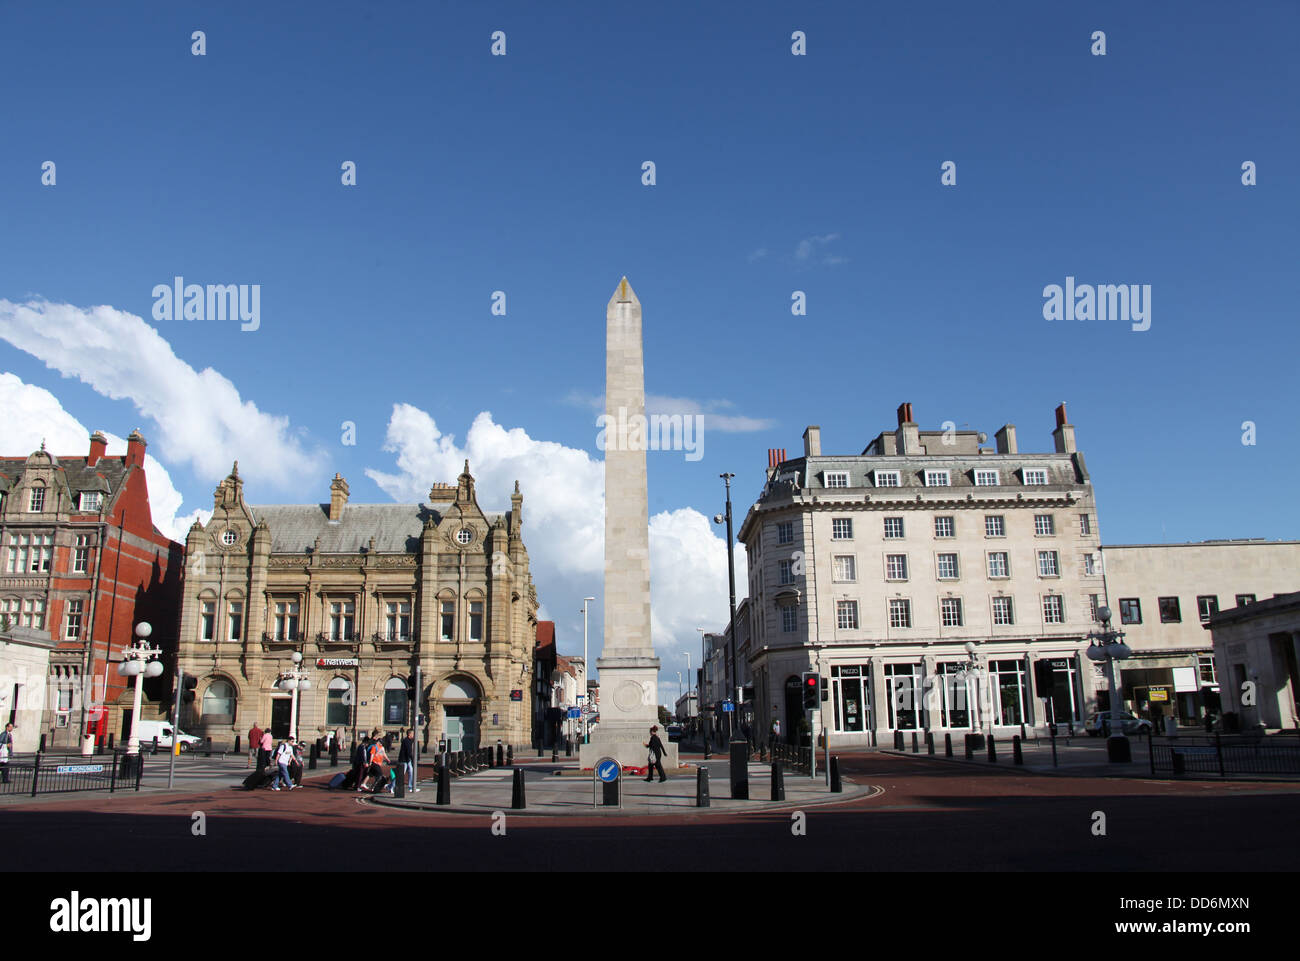 Southport en Lancashire con su War Memorial Obelisco de piedra de Portland Foto de stock